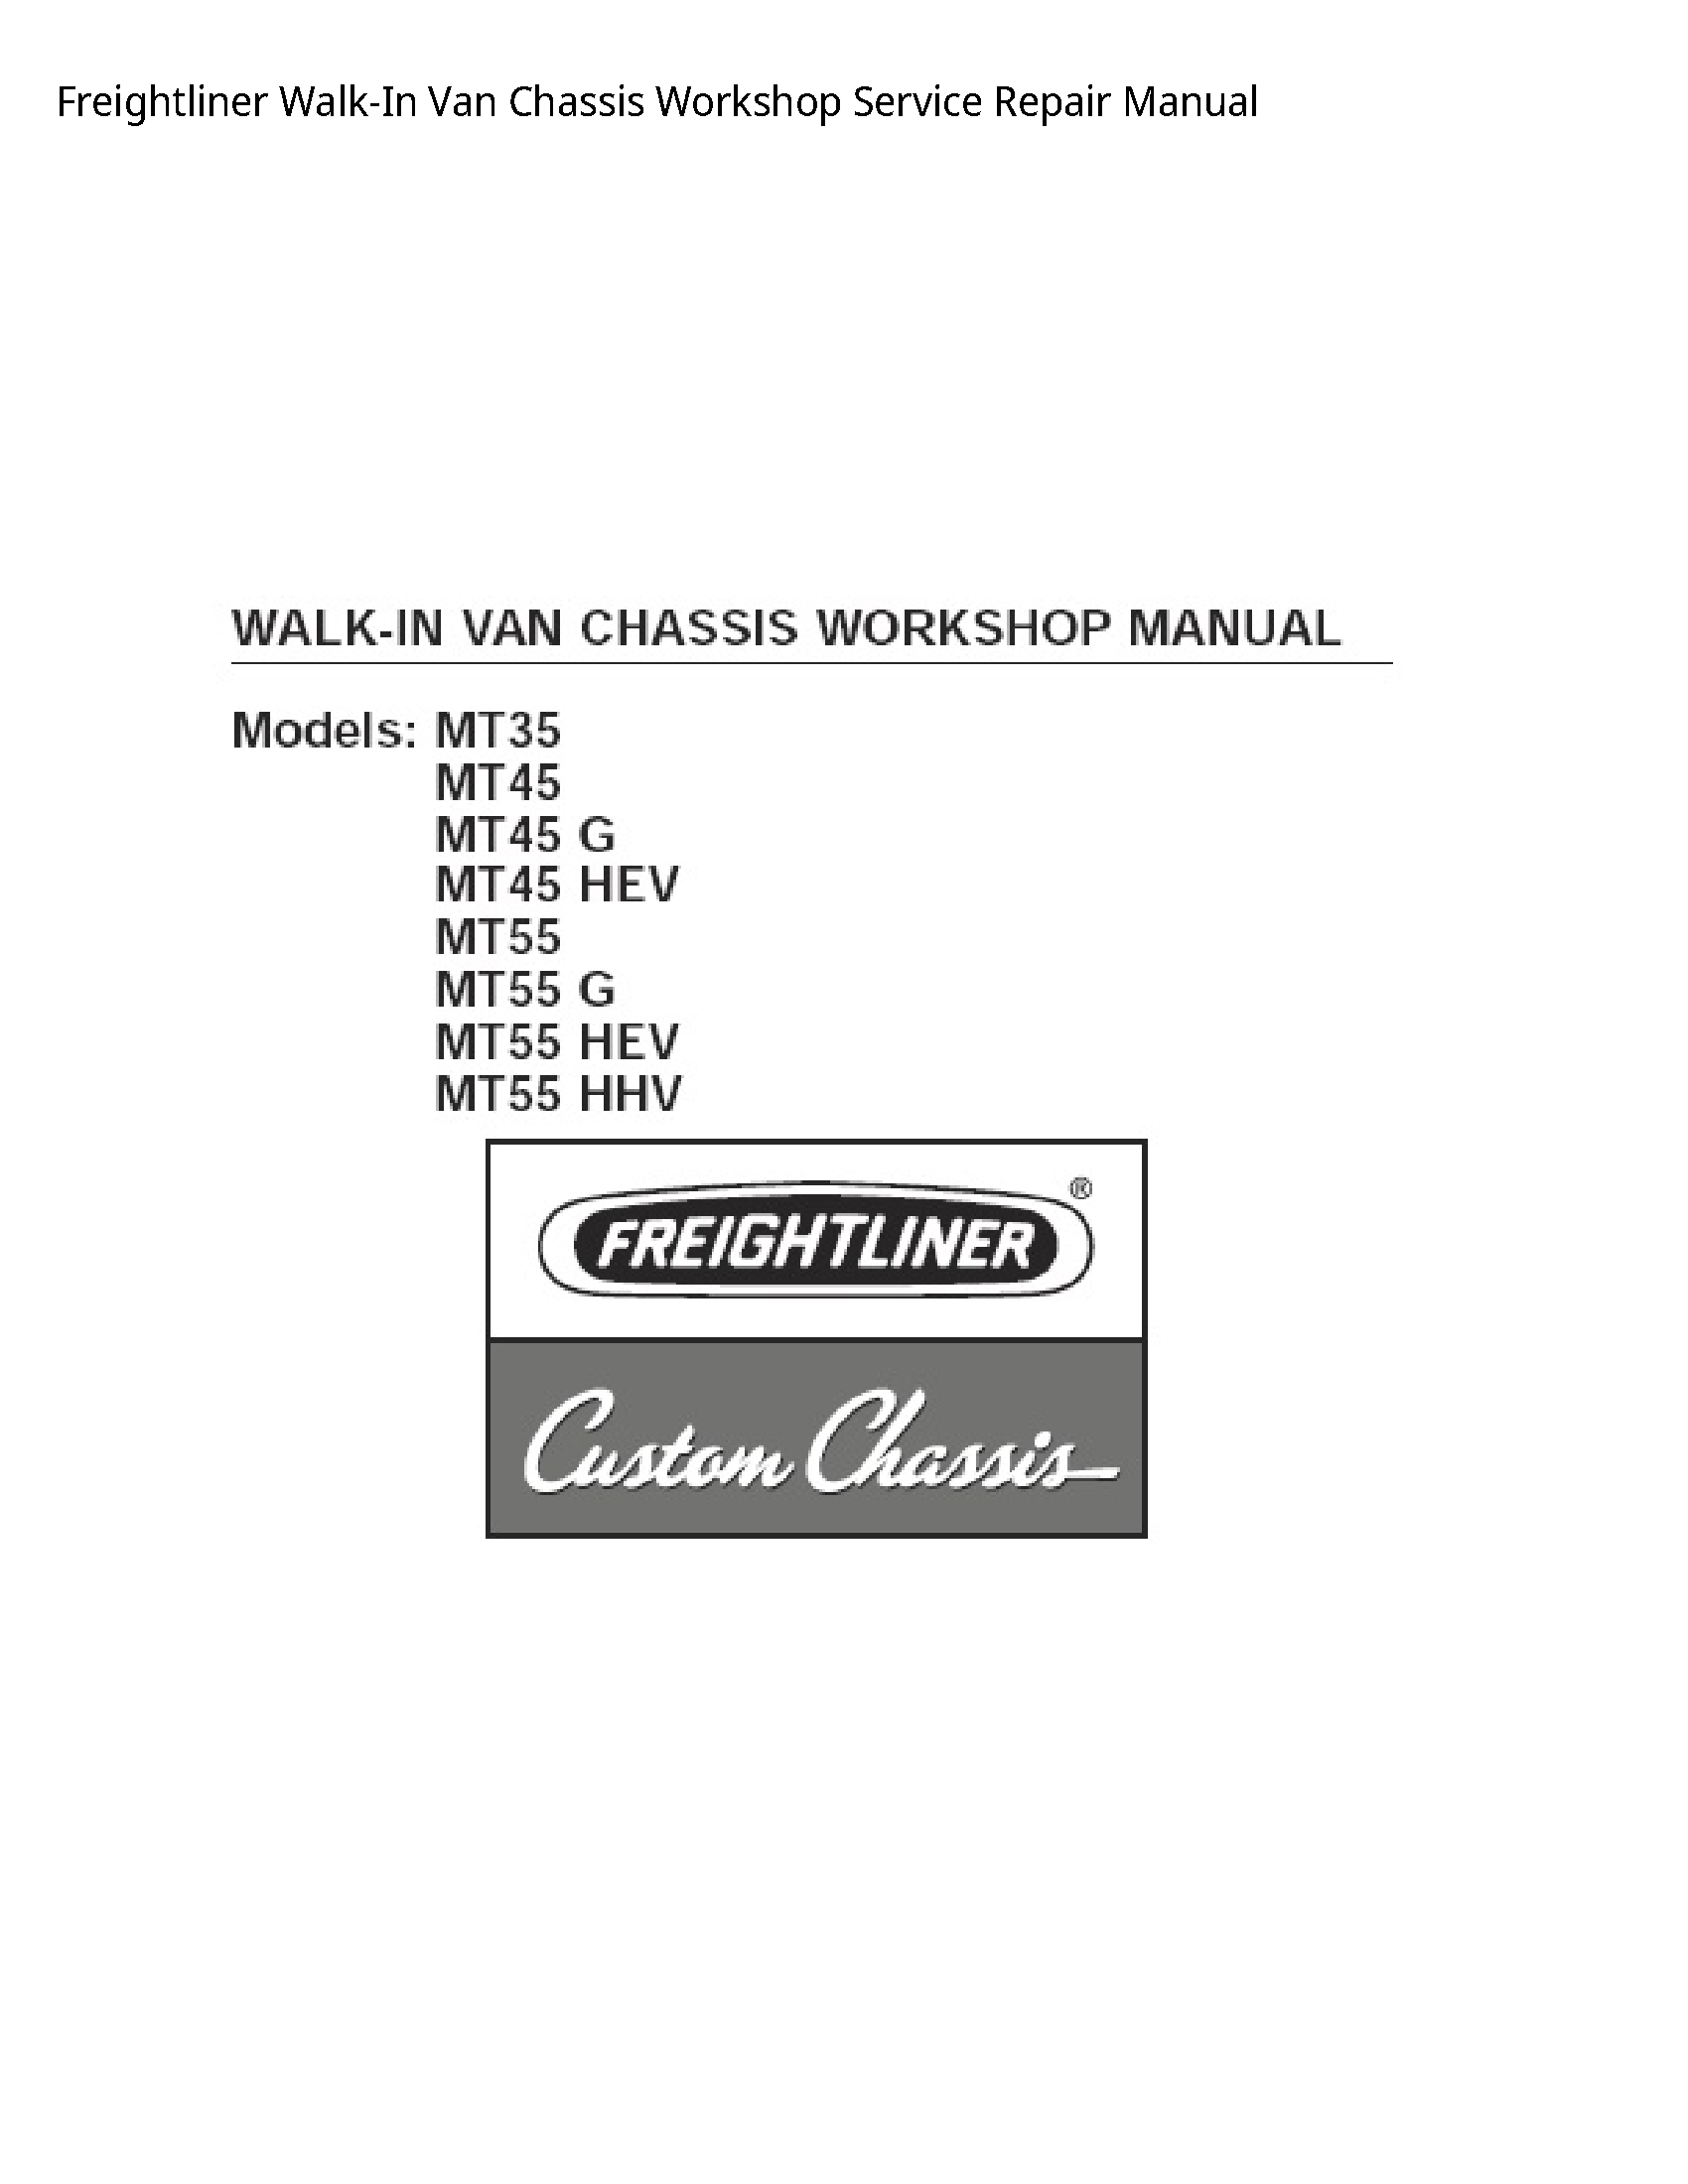 Freightliner Walk-In Van Chassis manual